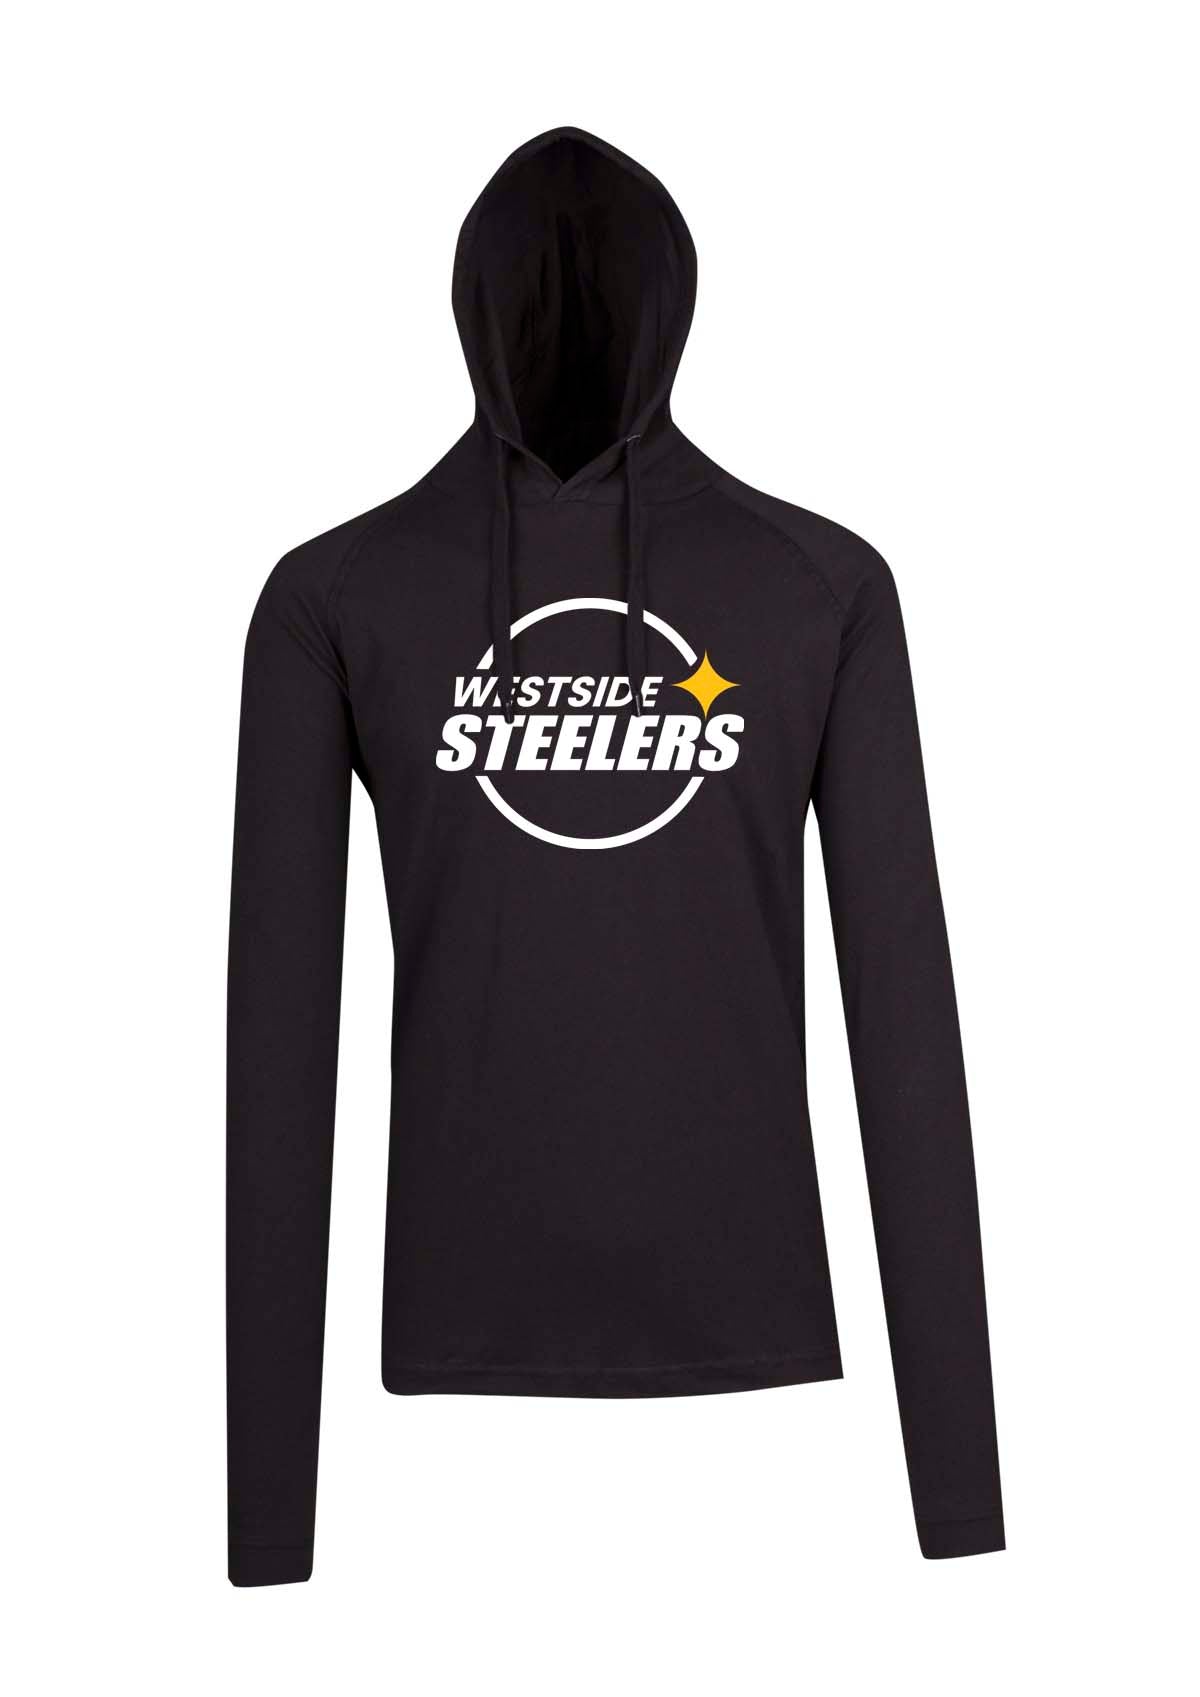 Westside Steelers logo T-shirt Hoodie